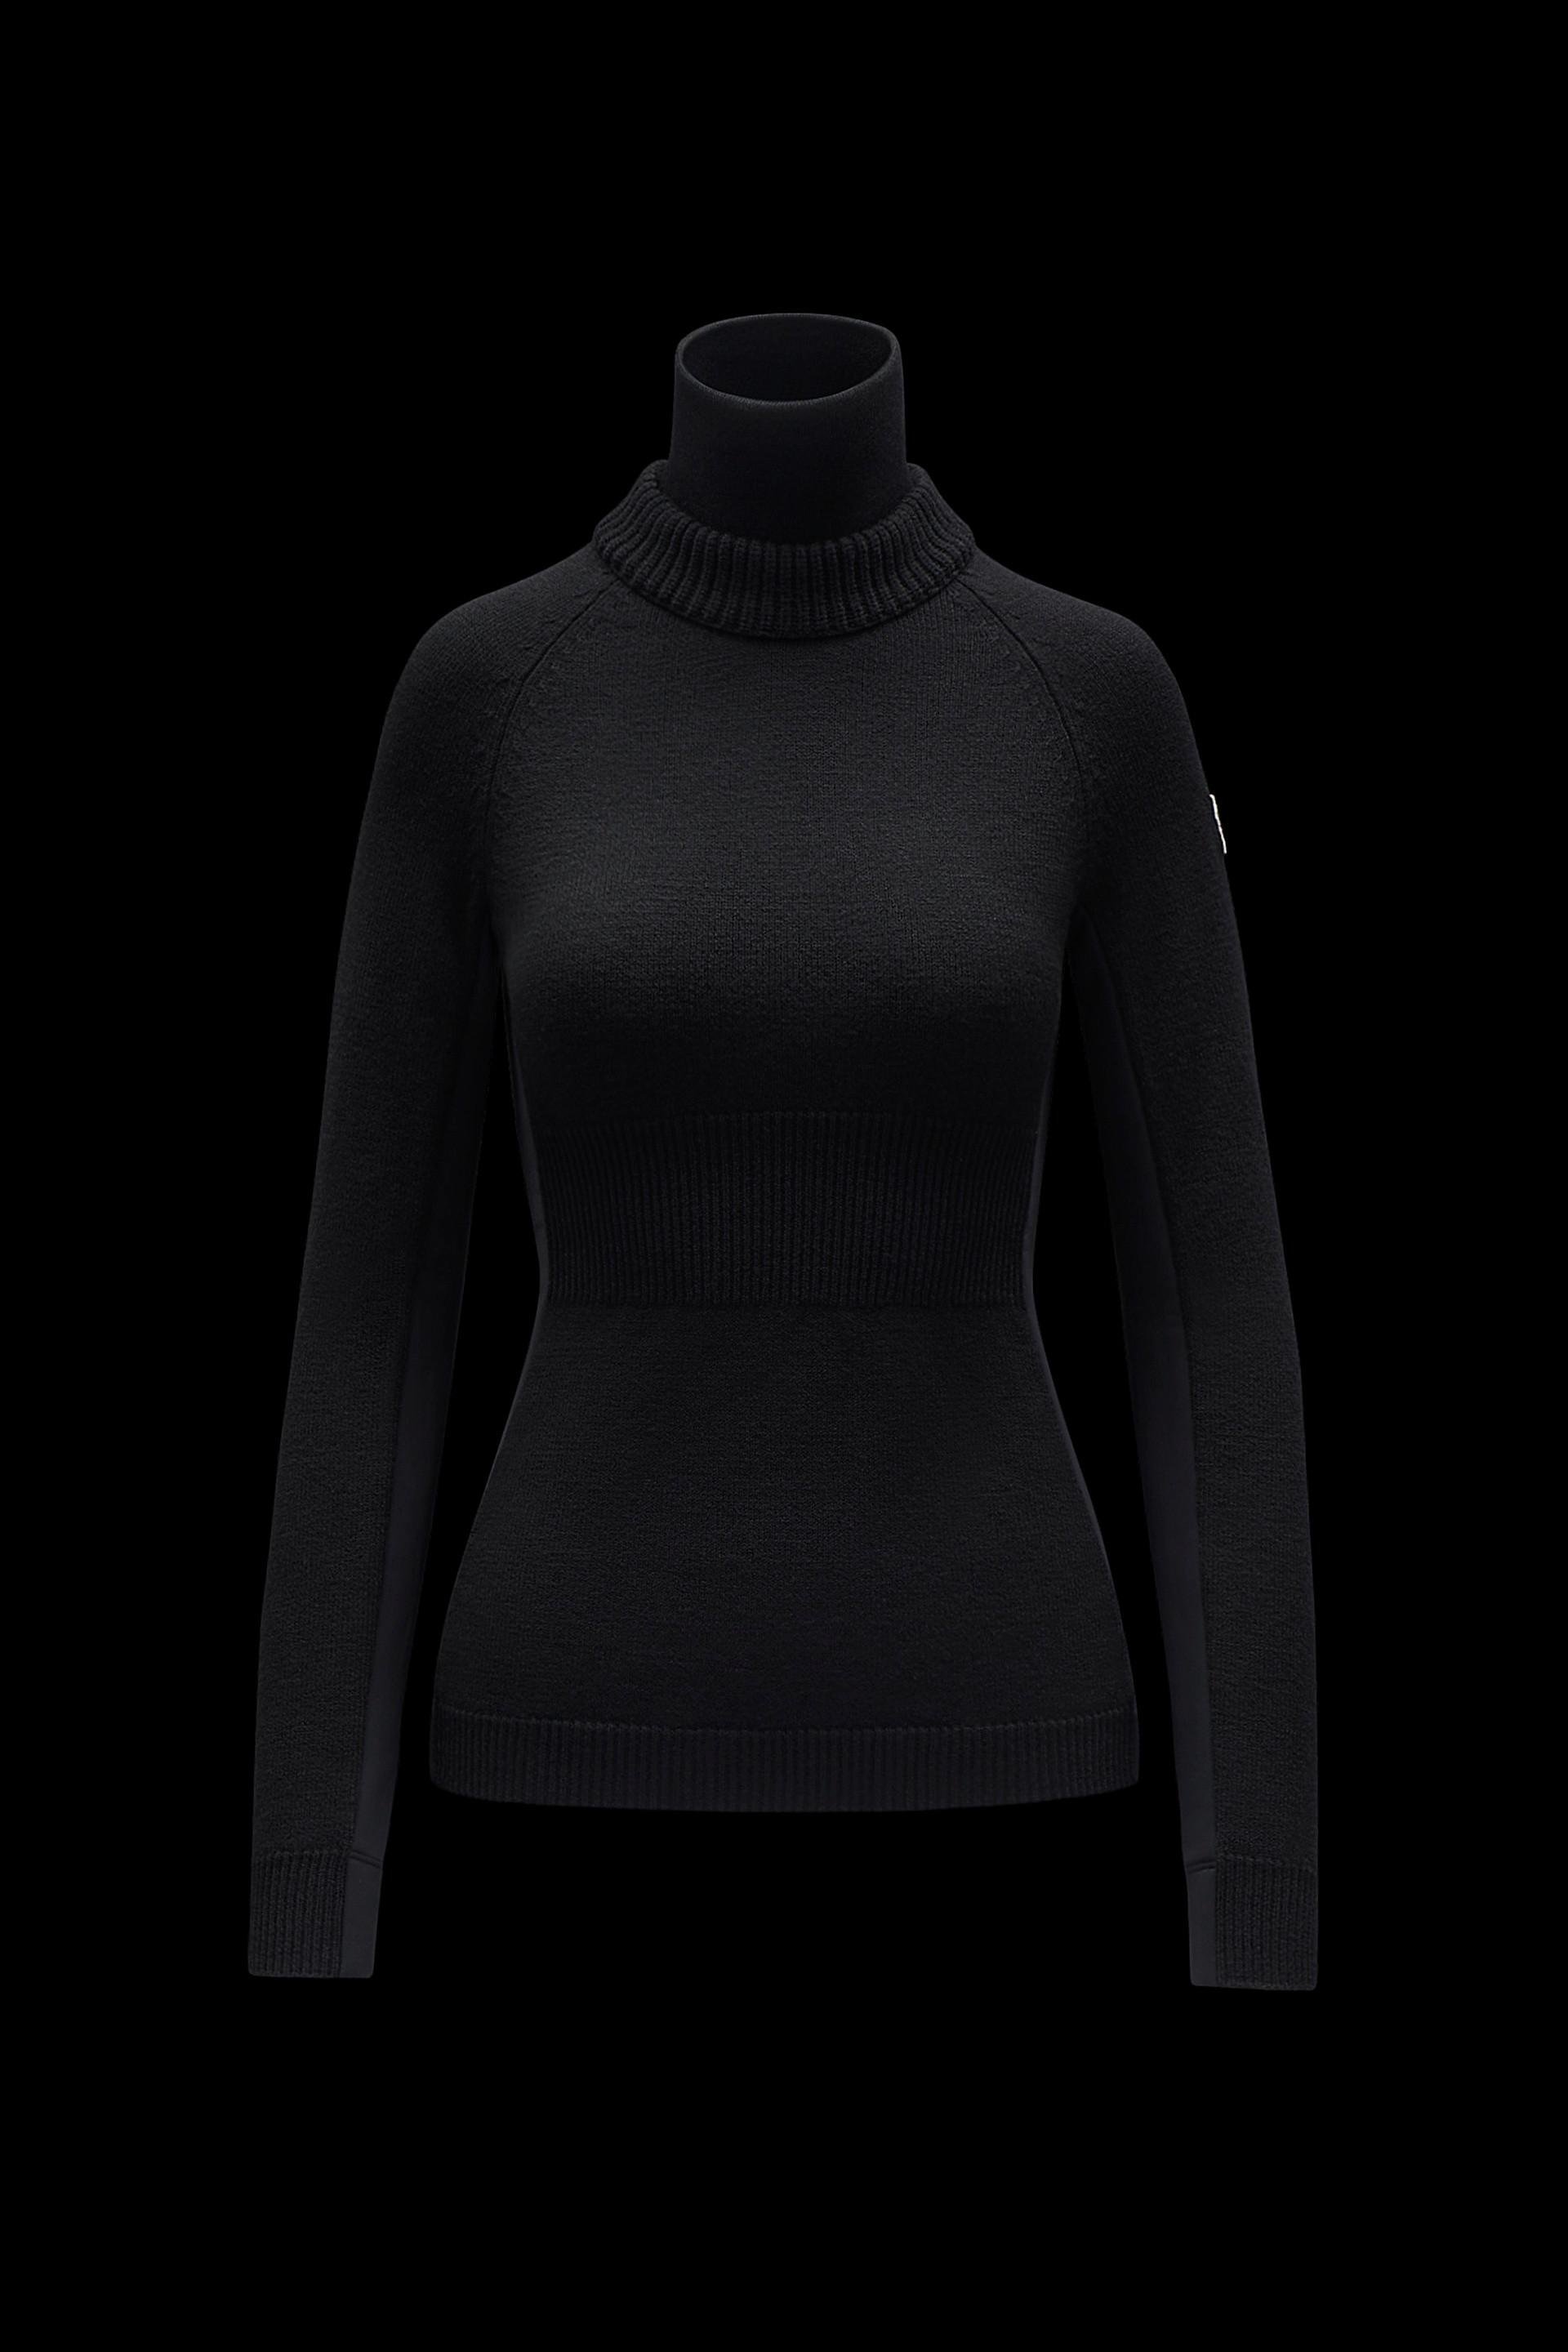 Wool & Fleece Turtleneck Sweater by MONCLER